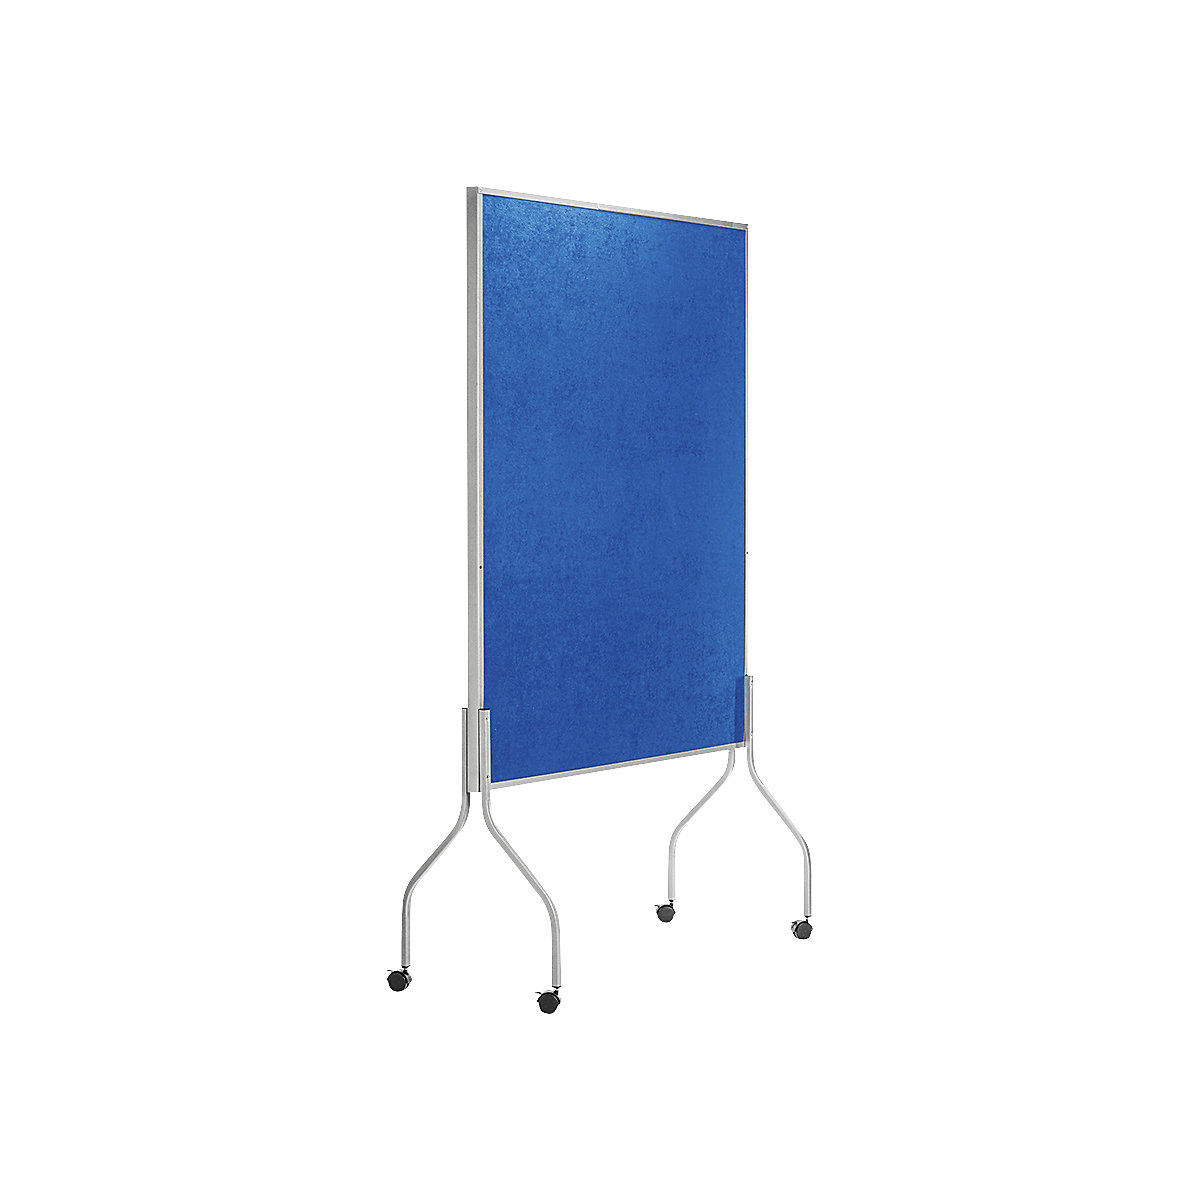 Mobilní přednášková stěna, v x š x h 1950 x 1200 x 680 mm, modrý textilní potah-4